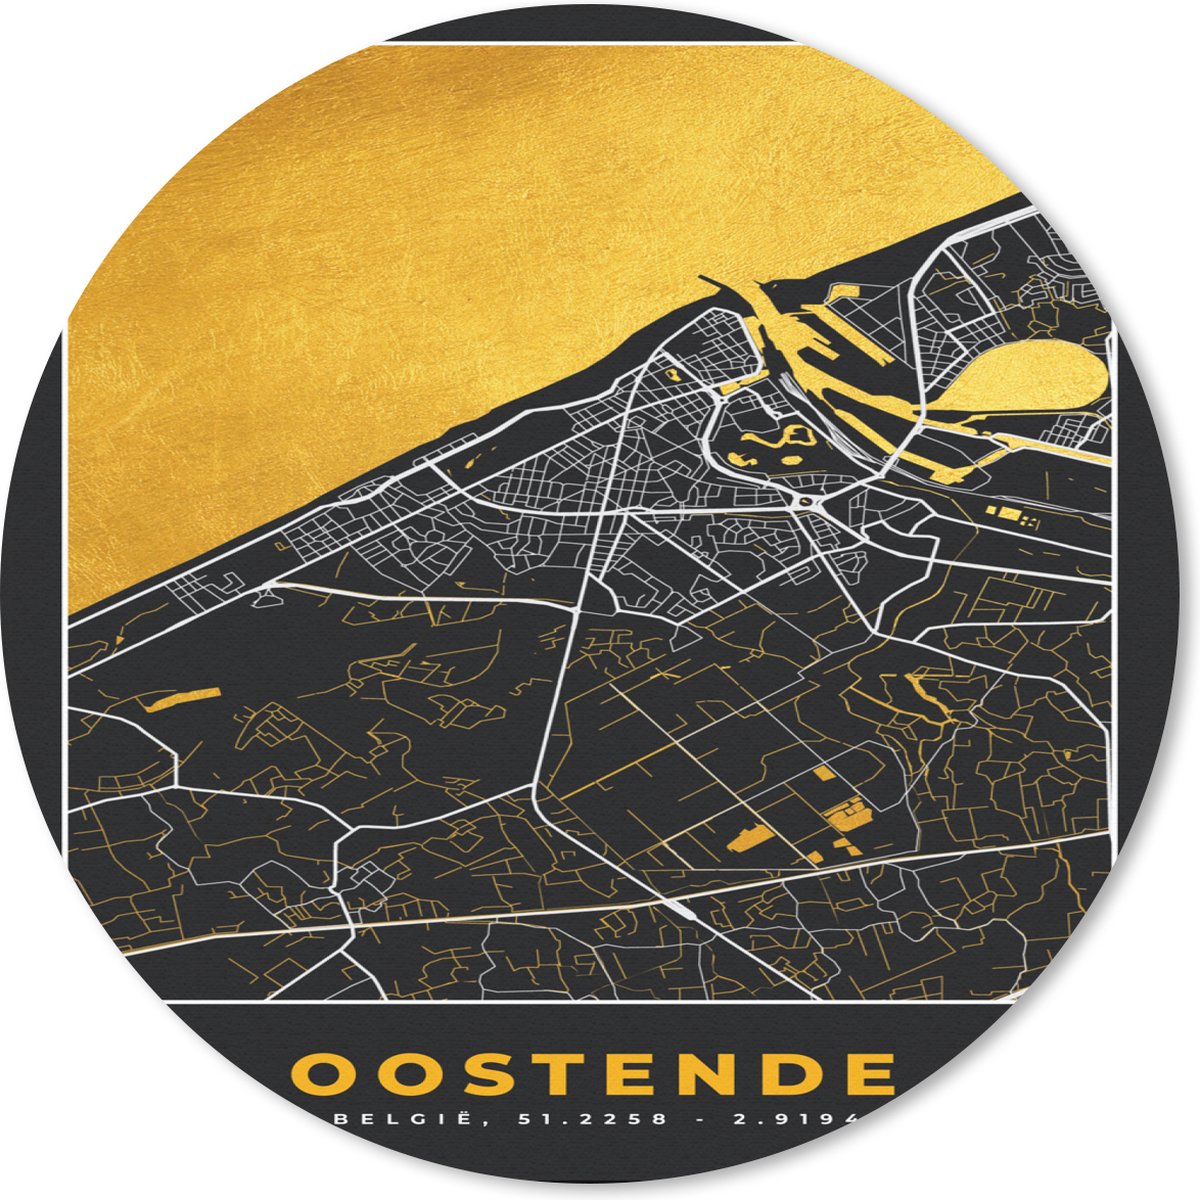 Muismat - Mousepad - Rond - Stadskaart - Oostende - Plattegrond - Goud - Kaart - 20x20 cm - Ronde muismat